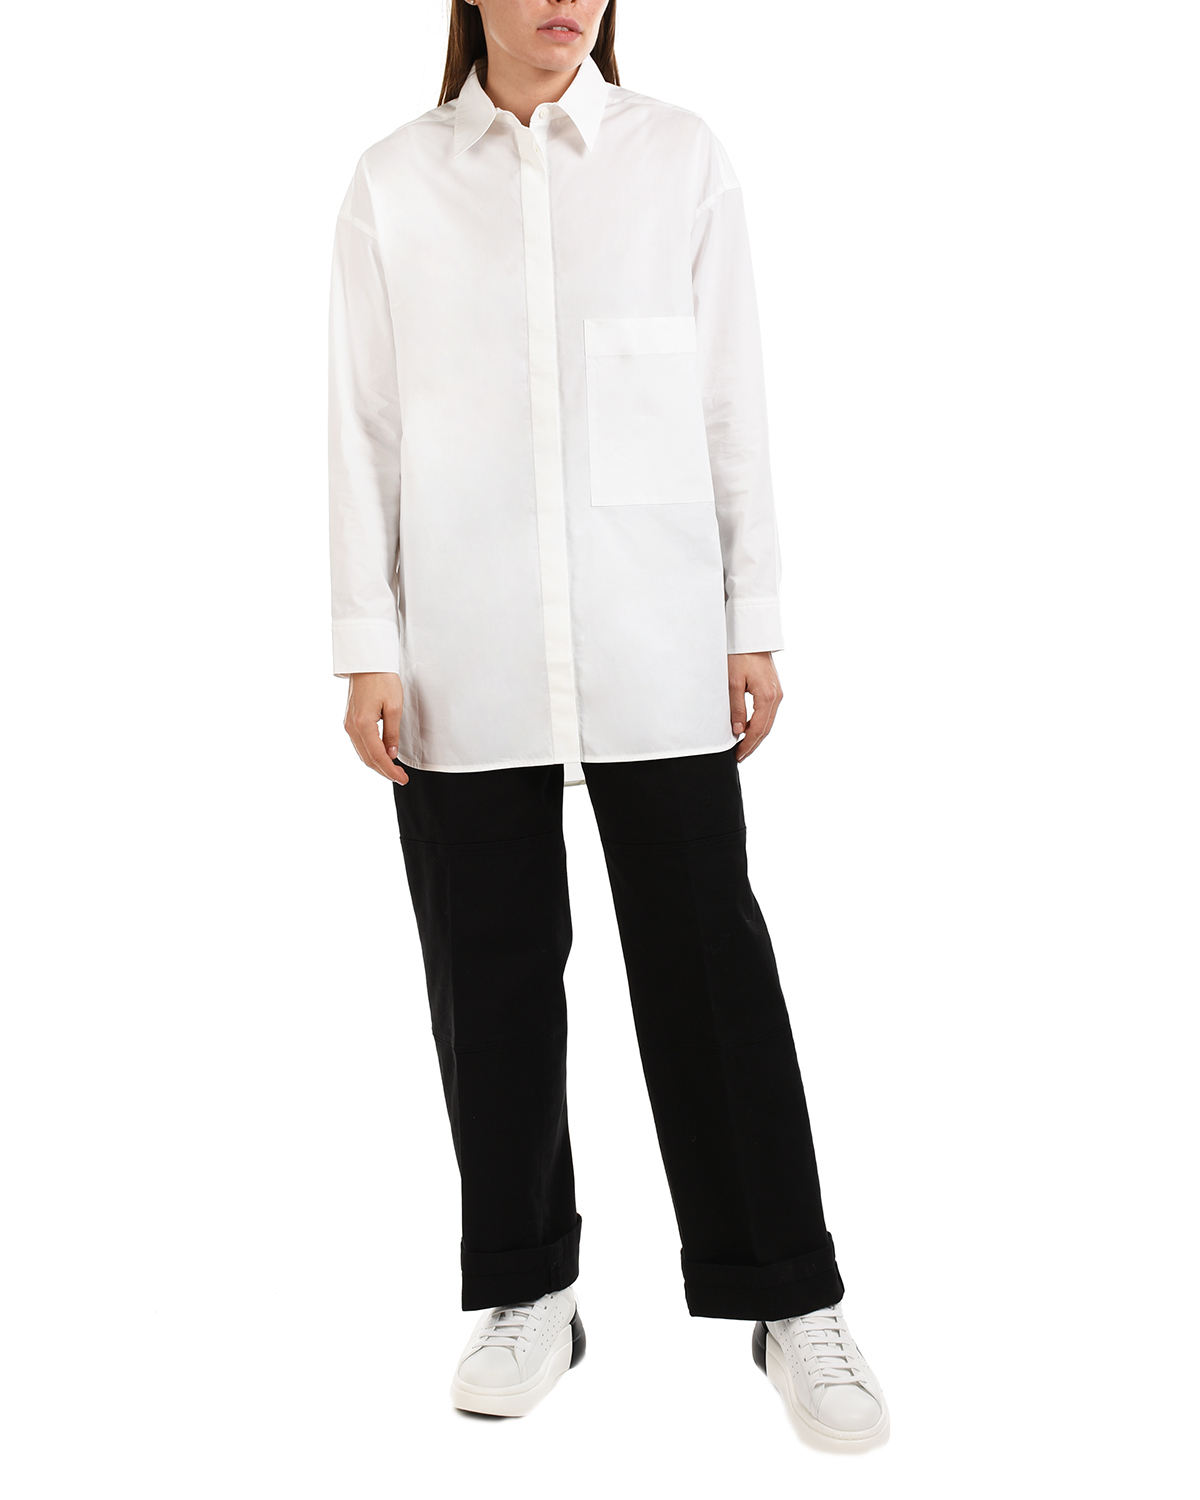 Удлиненная белая рубашка Parosh, размер 38, цвет белый - фото 2